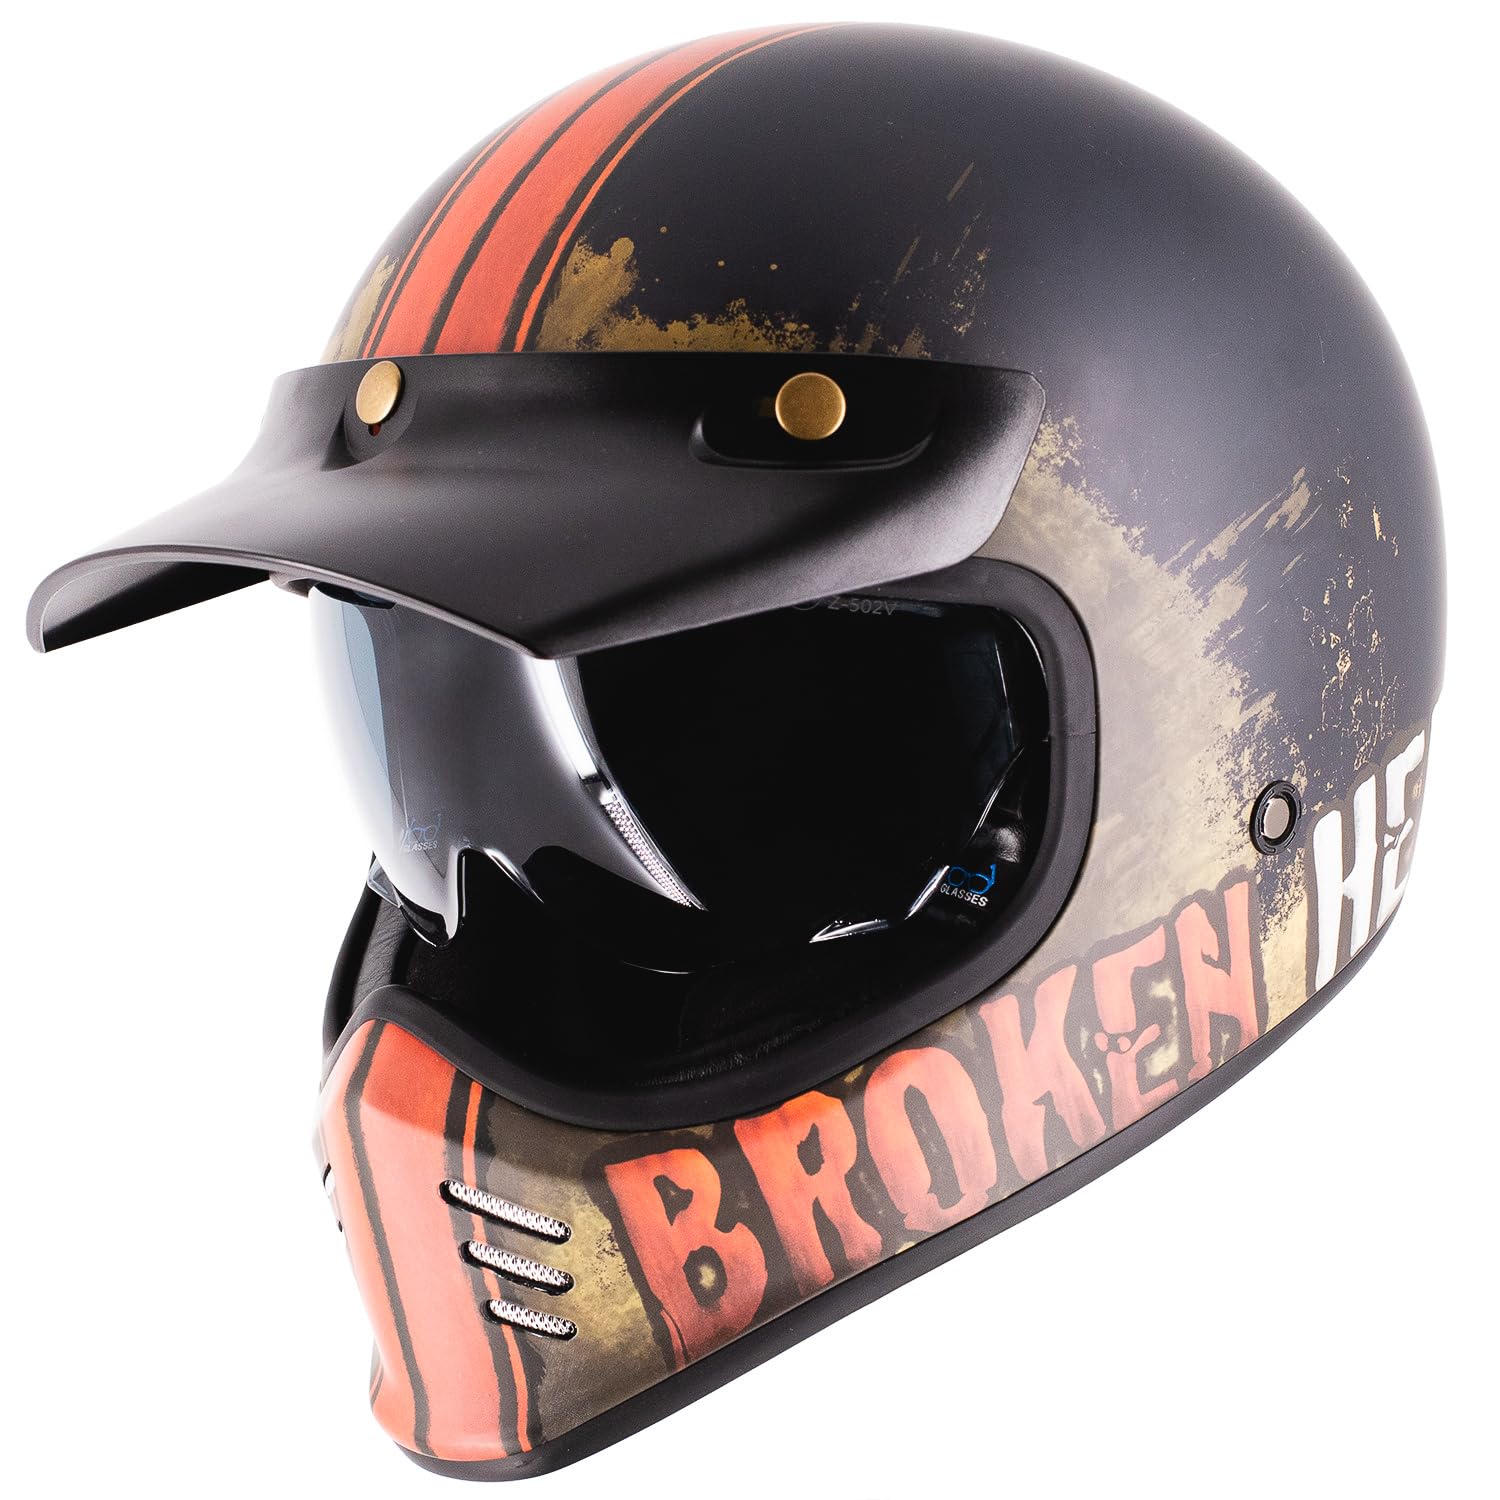 Broken Head Retro MX Helm Rusty Rider Orange Mit Sonnenblende - Vintage Look - Perfekt für Scrambler, Chopper, Bobber, Retrobike (XXL (63-64 cm)) von Broken Head